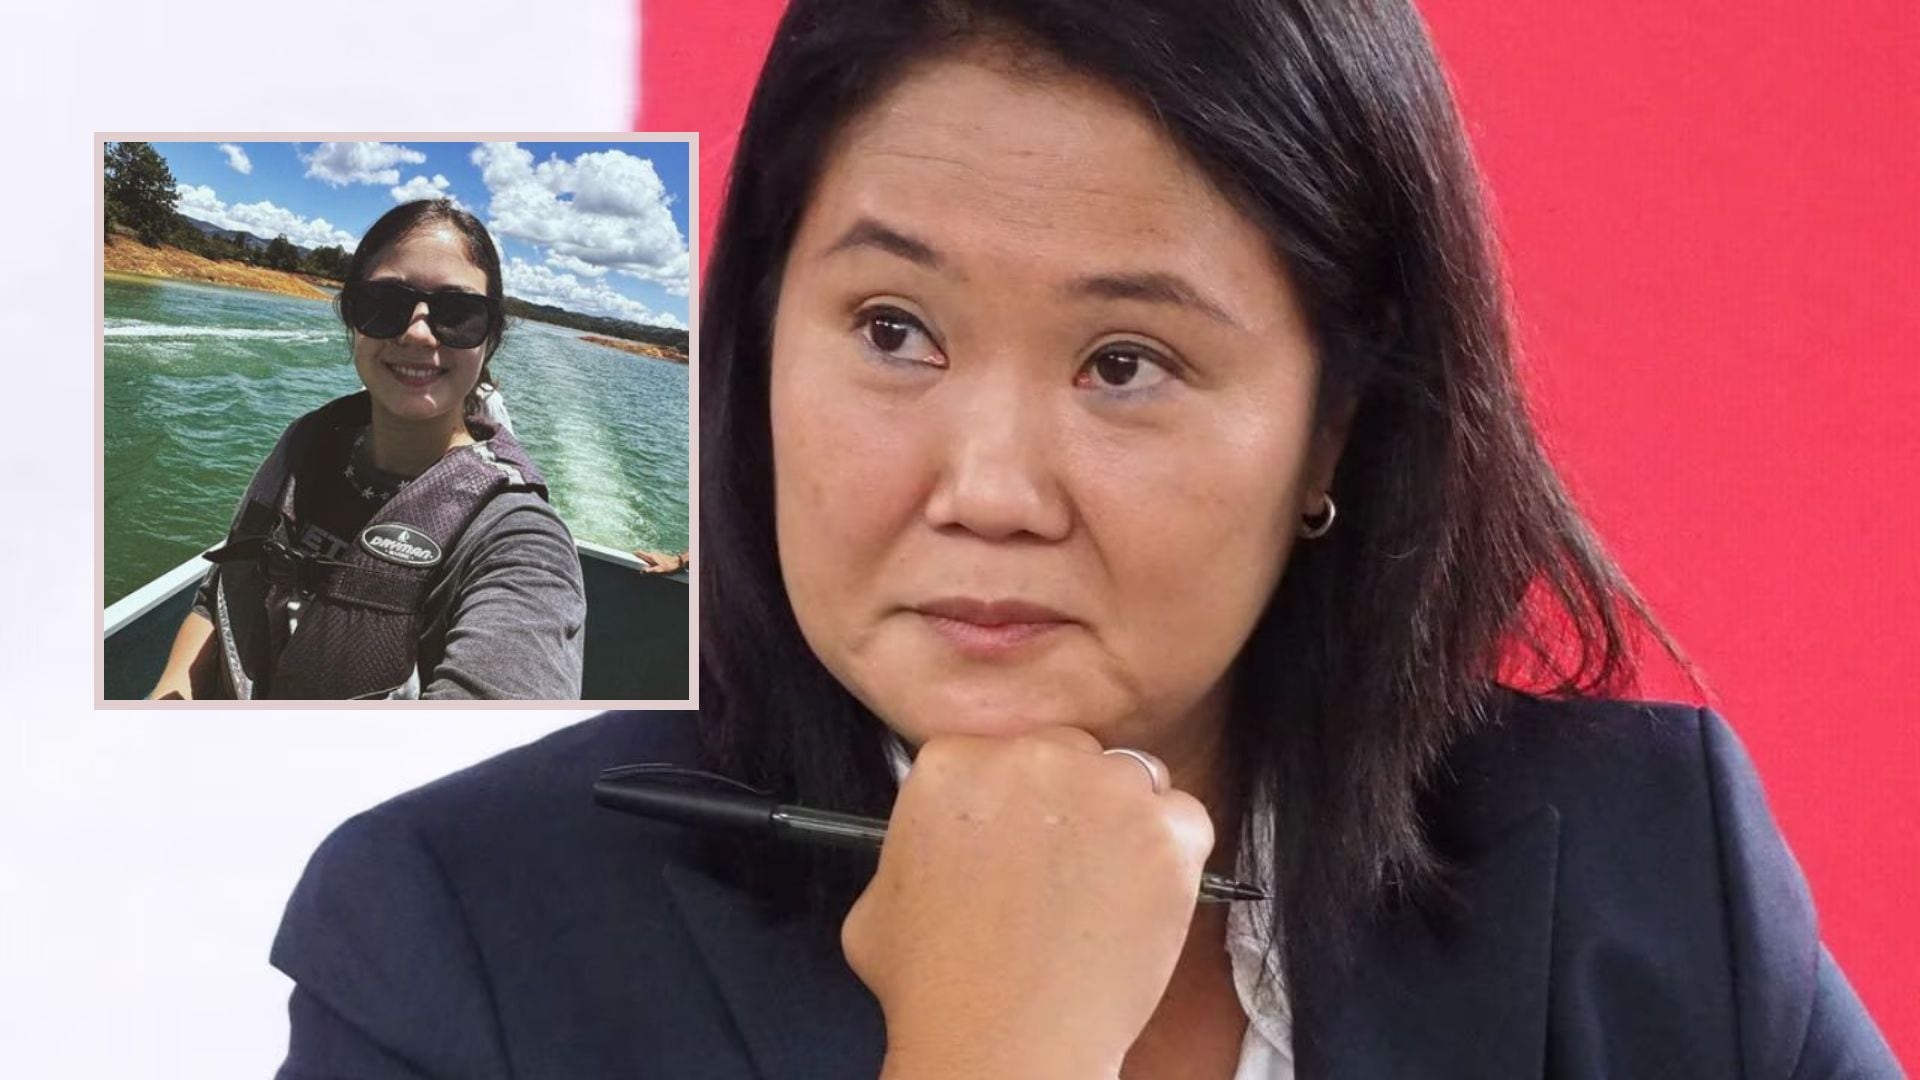 Hija de Keiko Fujimori revela que no quiere dedicarse a las redes sociales. Composición Infobae / IG Kyara Villanella